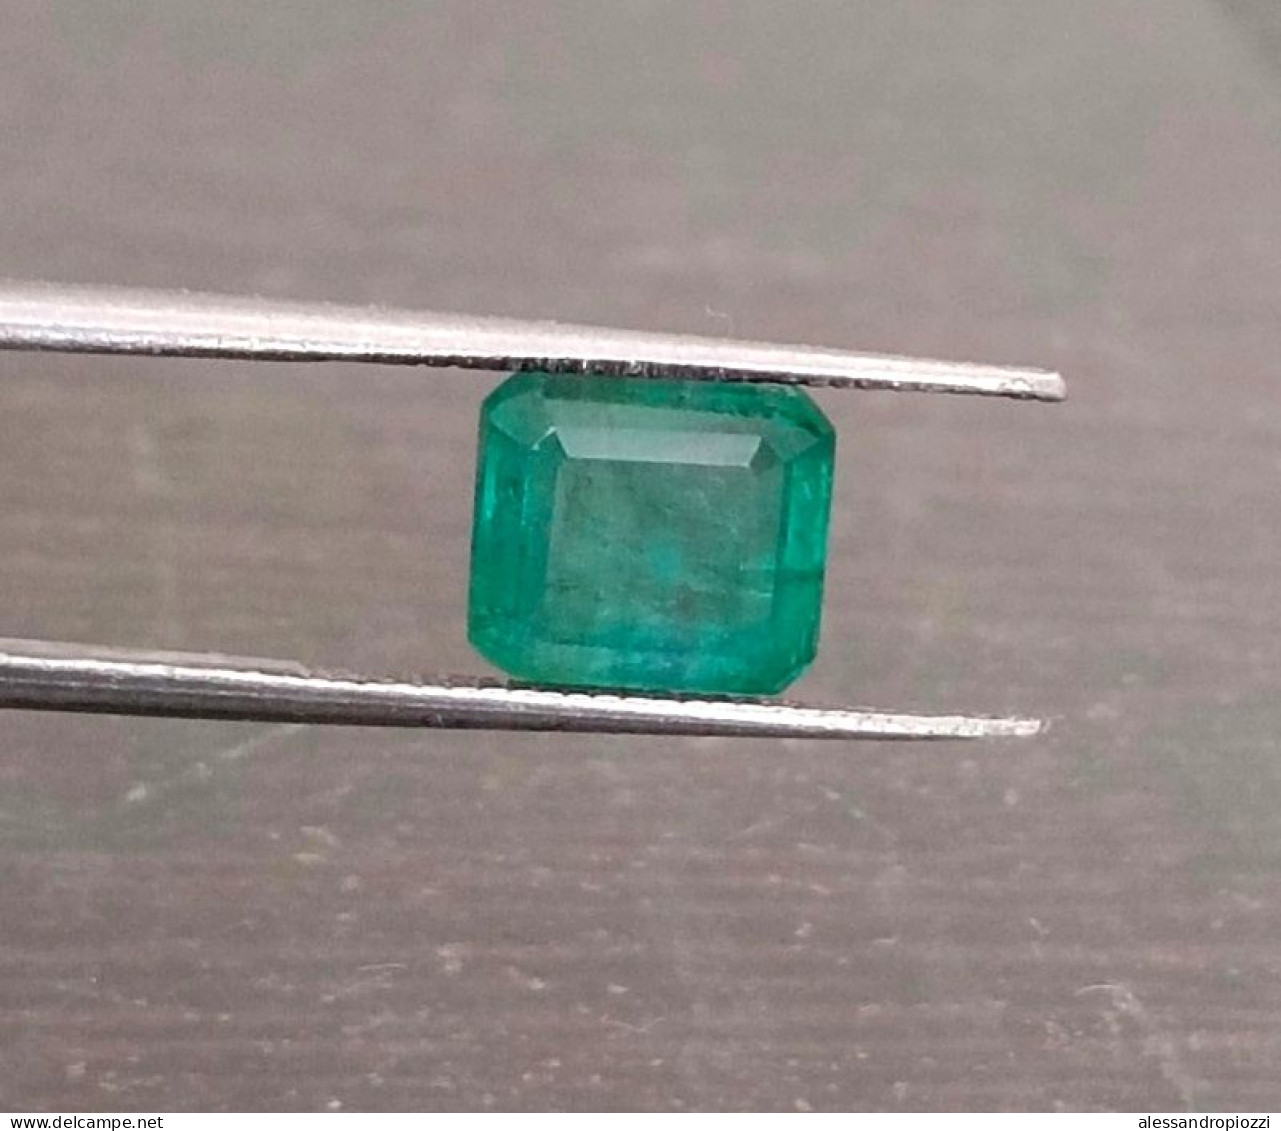 Smeraldo dello Zambia certificato IGI da 2,79 ct, pietra preziosa naturale al 100%.